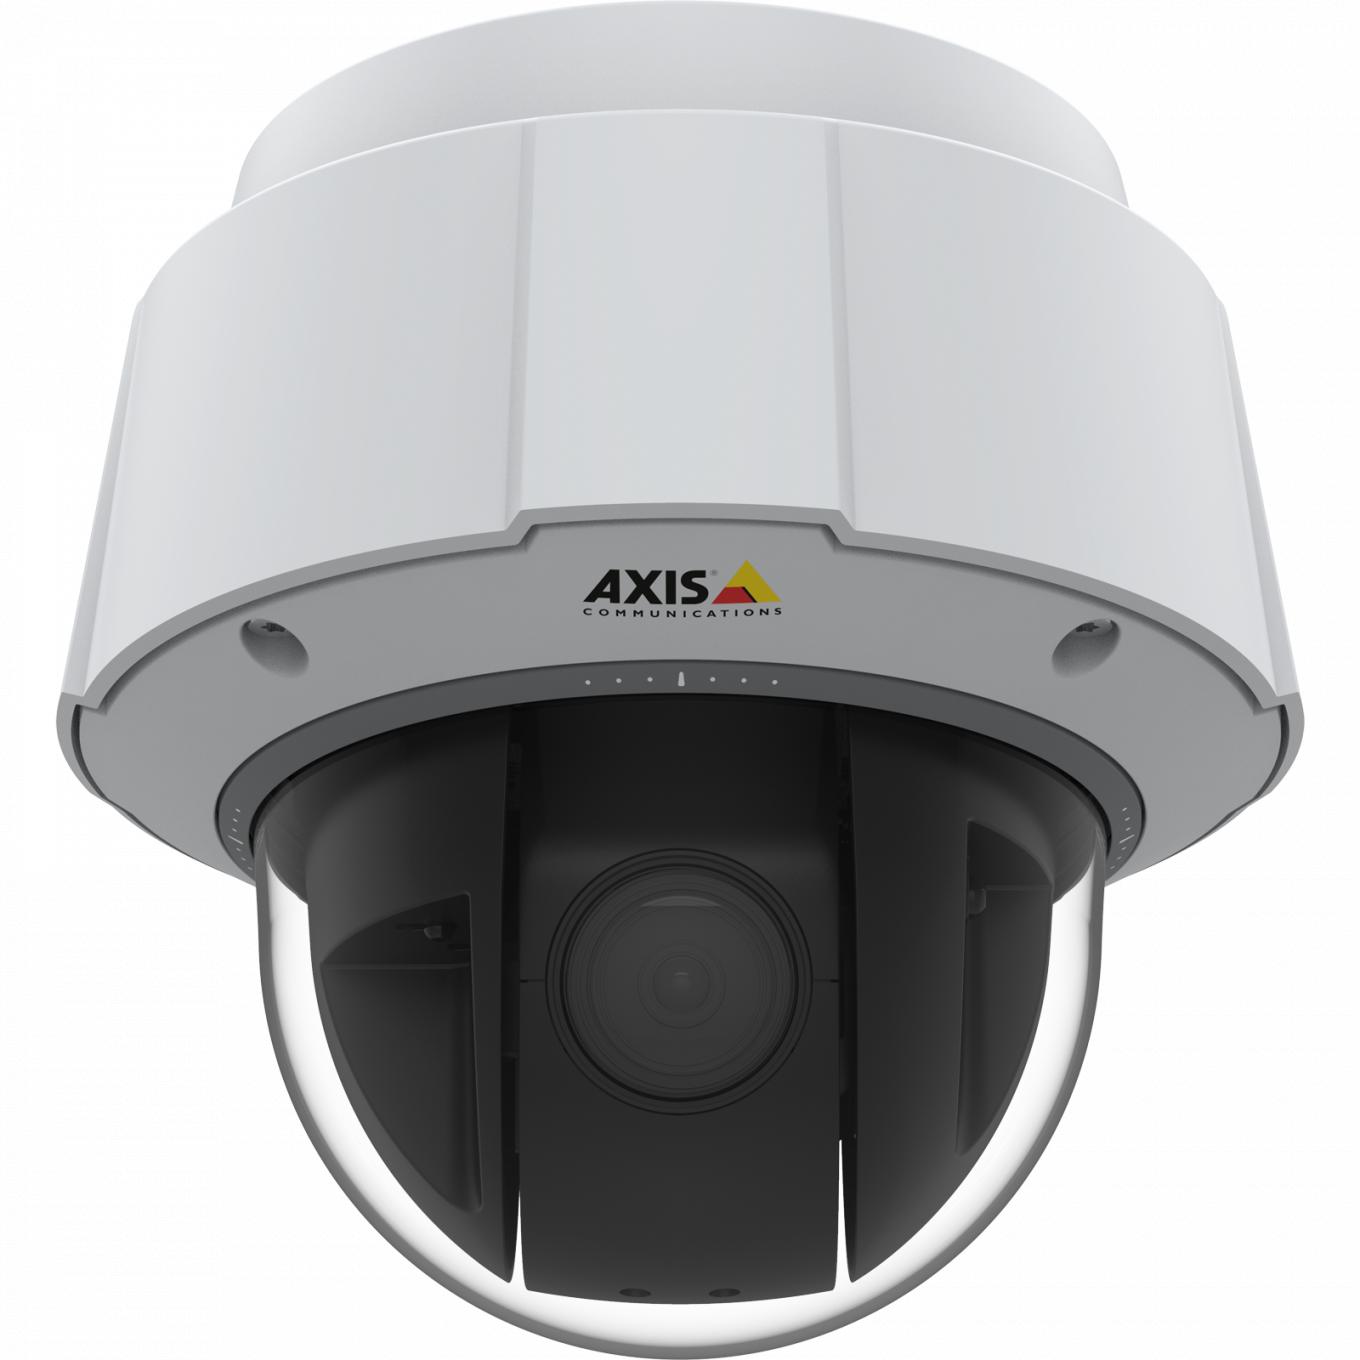 Le modèle IP Camera AXIS Q6075-E est certifié TPM, FIPS 140-2 niveau 2. La caméra est vue de face.